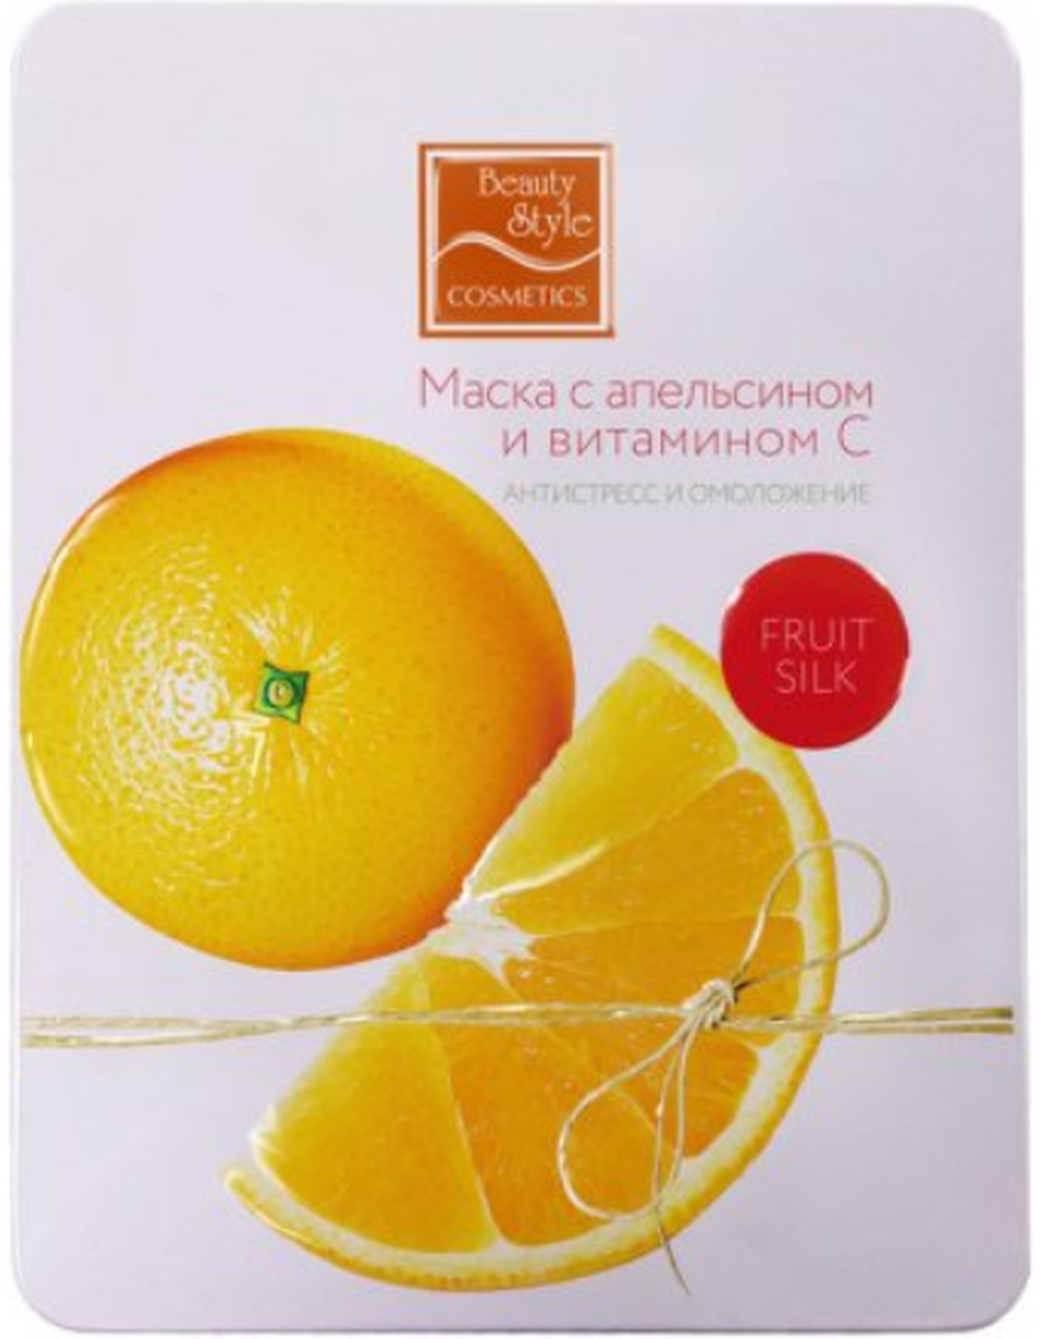 Маска с апельсином и витамином С "Антистресс и омоложение" Fruit Silk 30мл х 7шт Beauty Style фото